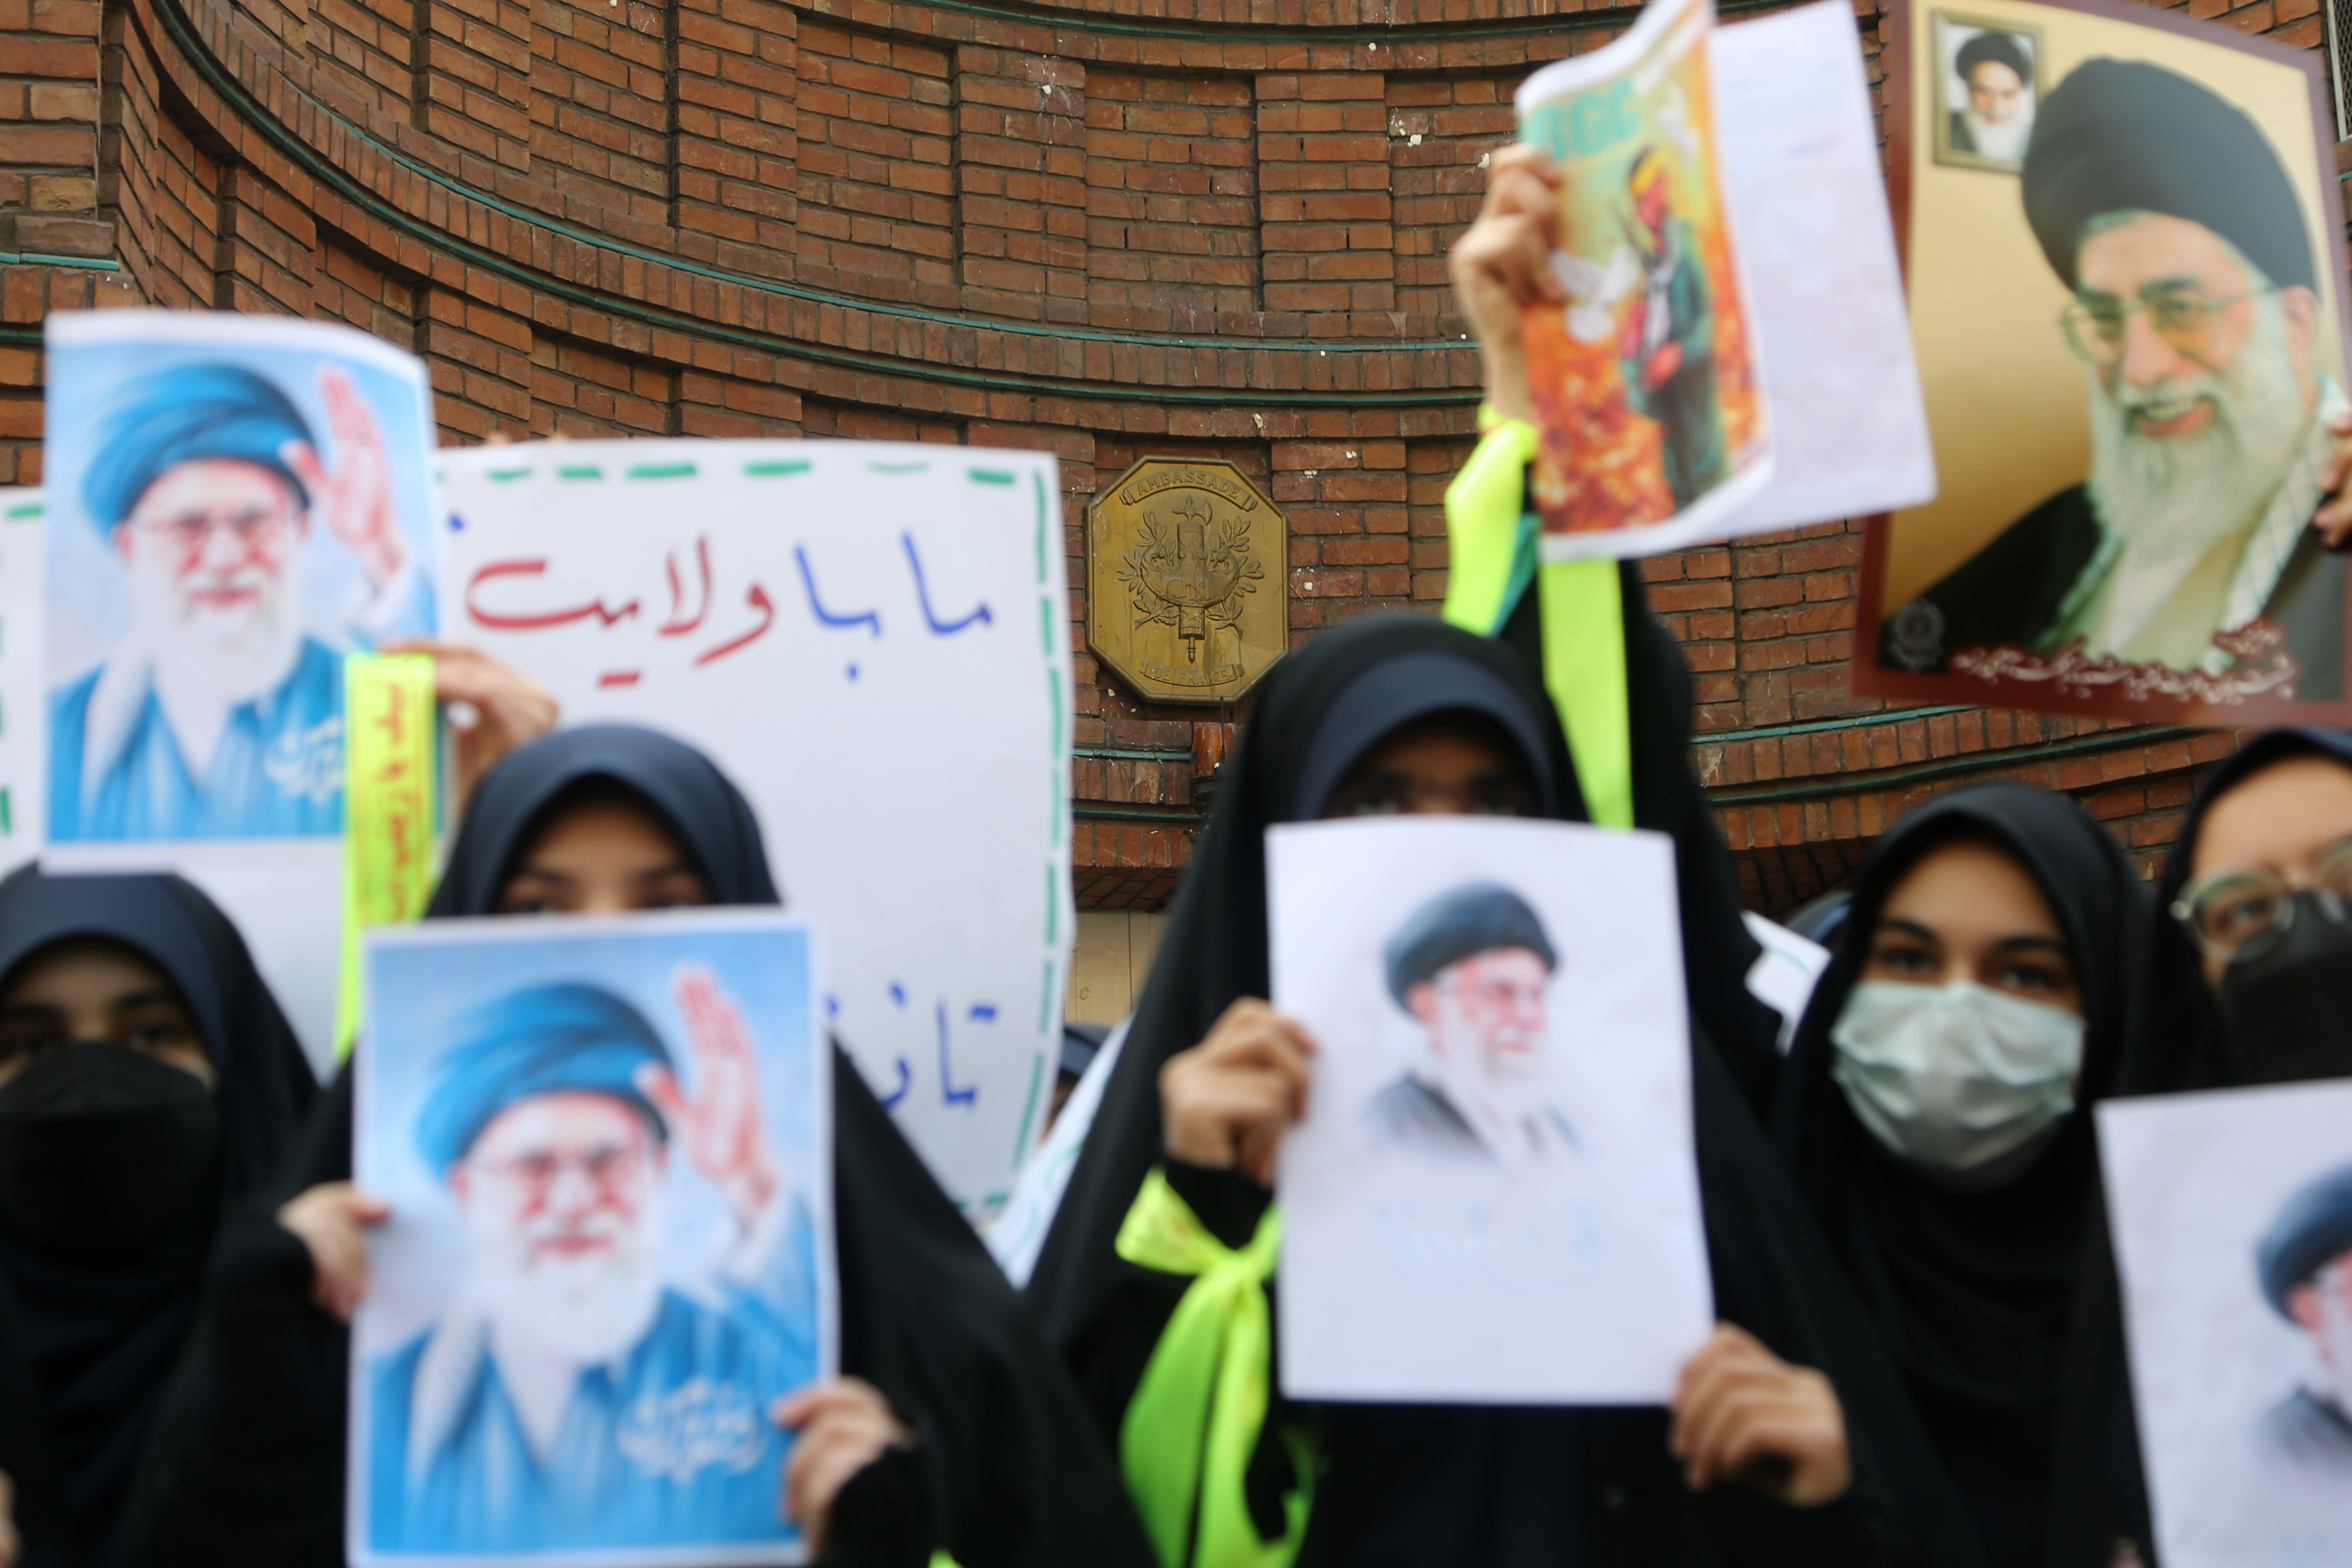 İranlı bir grup lise öğrencisi, Charlie Hebdo dergisinde yayımlanan hakaret içerikli karikatürler nedeniyle İran'ın başkenti Tahran'da gösteri düzenledi.